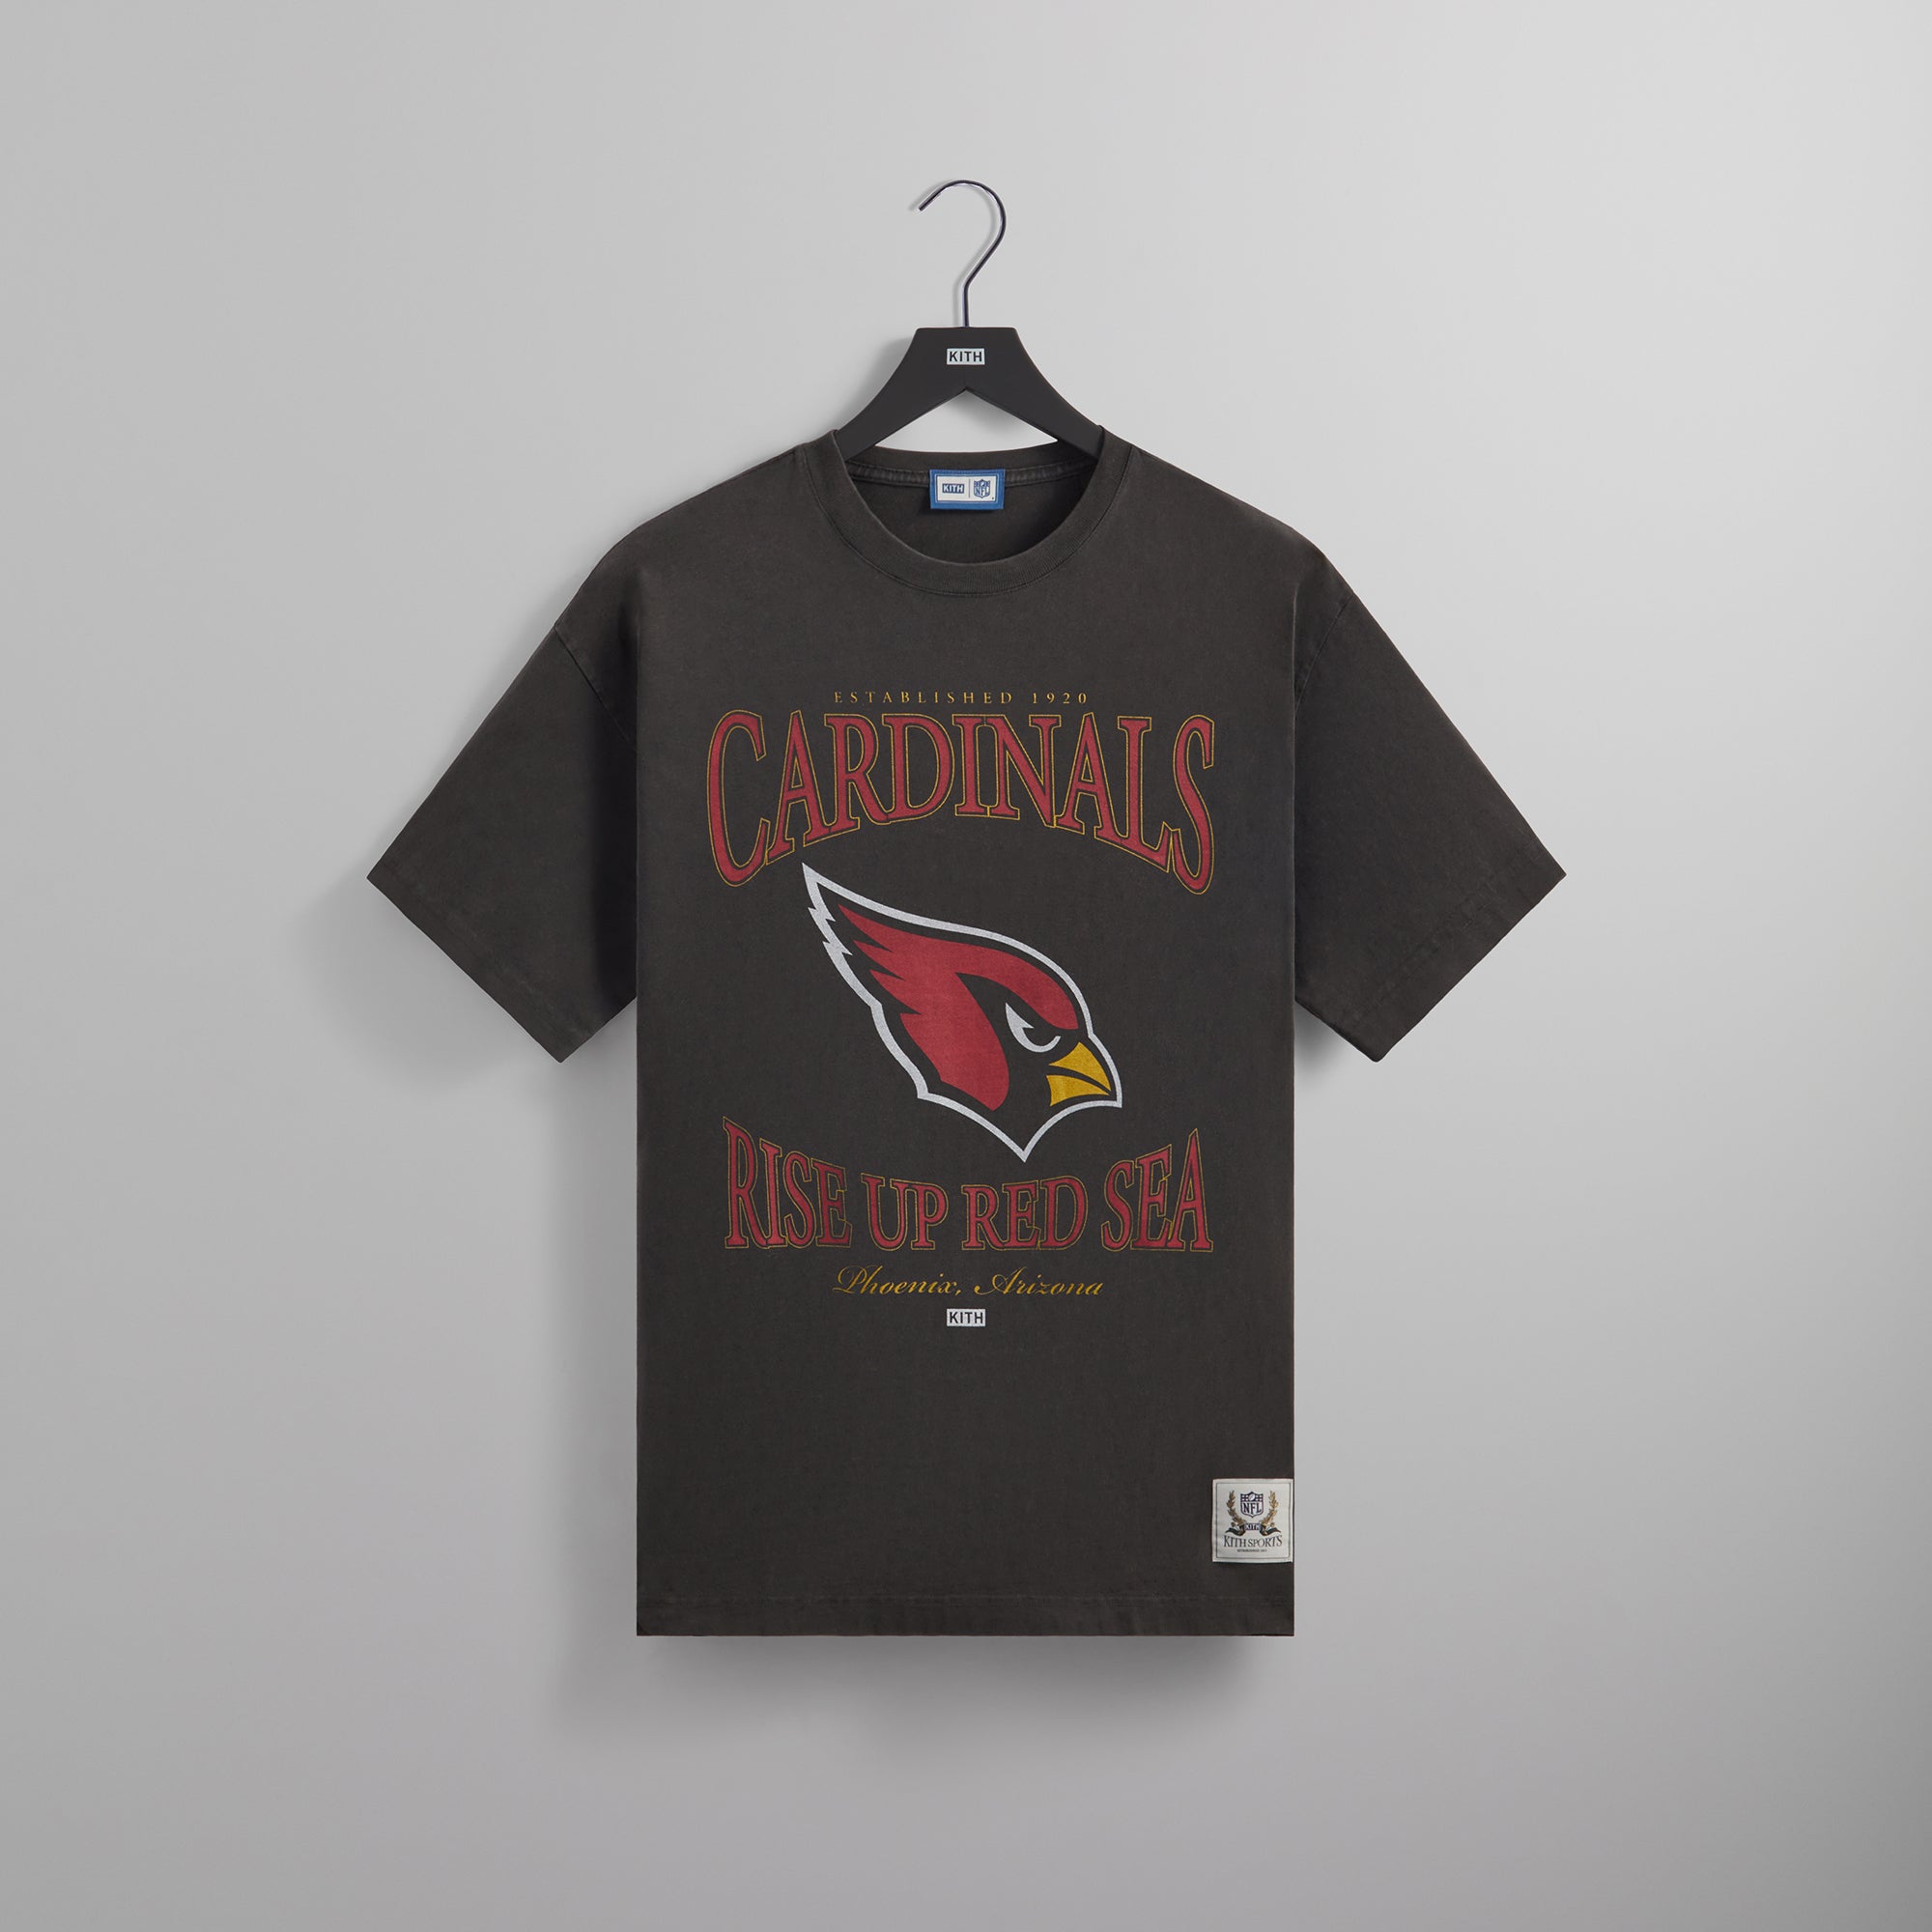 vintage arizona cardinals shirt